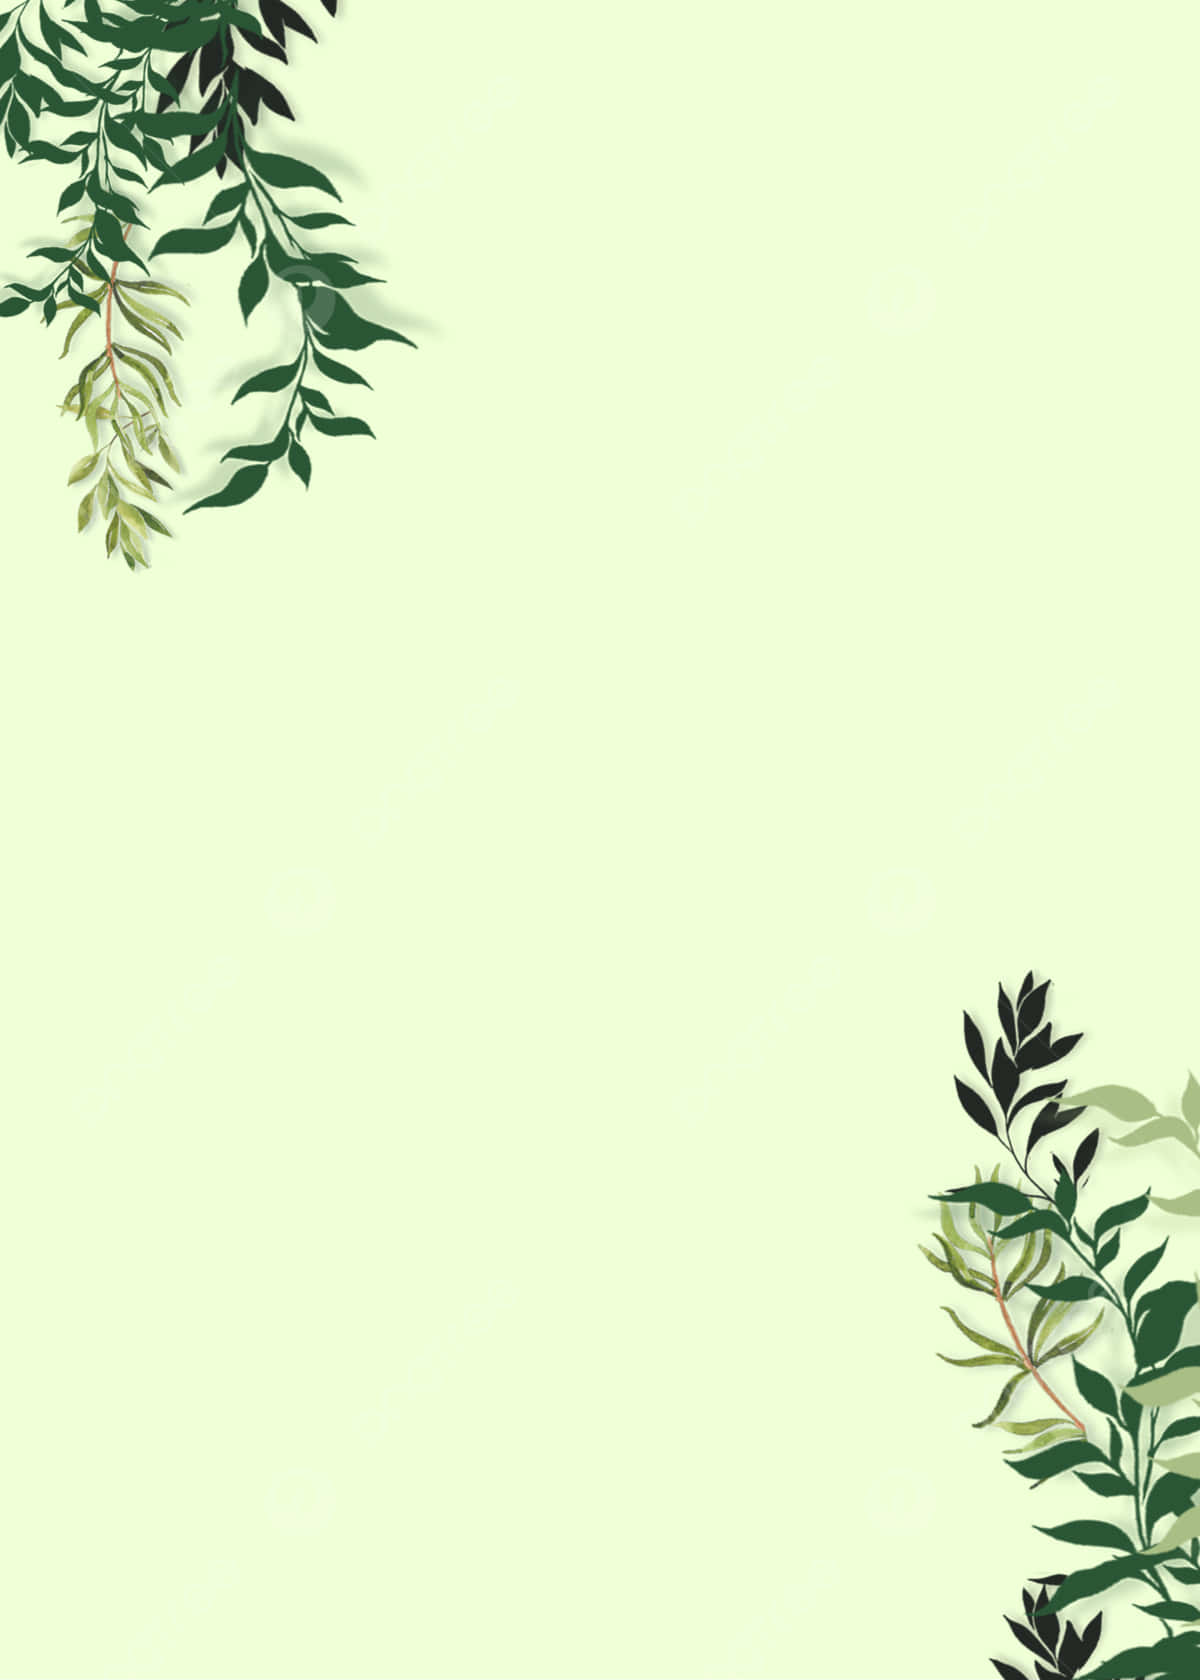 Green Vine Border Background Wallpaper